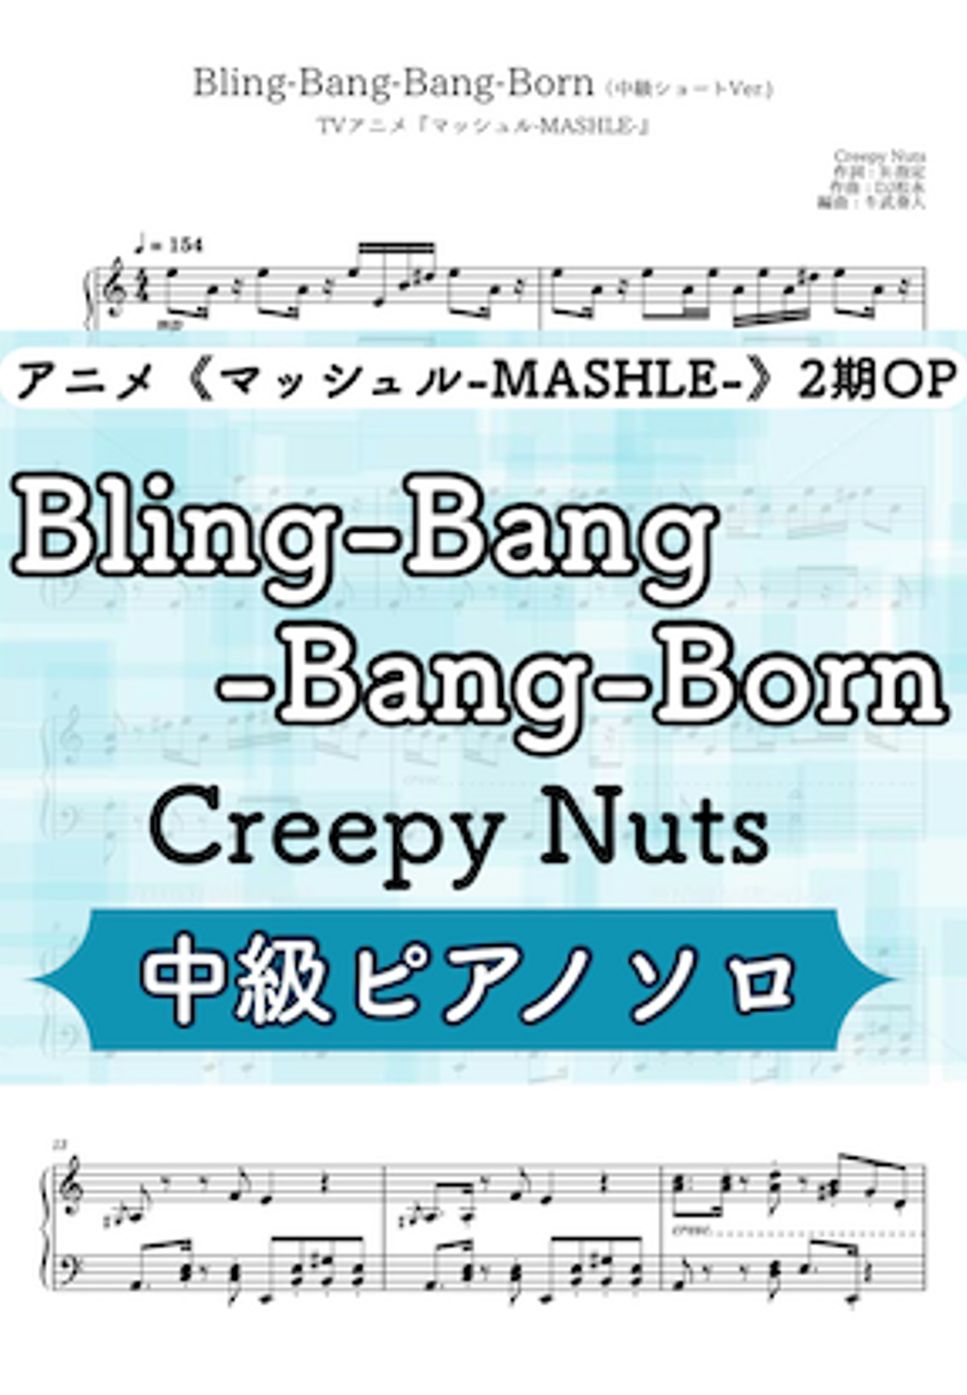 Creepy Nuts - Bling-Bang-Bang-Born (アニメ《マッシュル》2期OP主題歌) by 牛武奏人